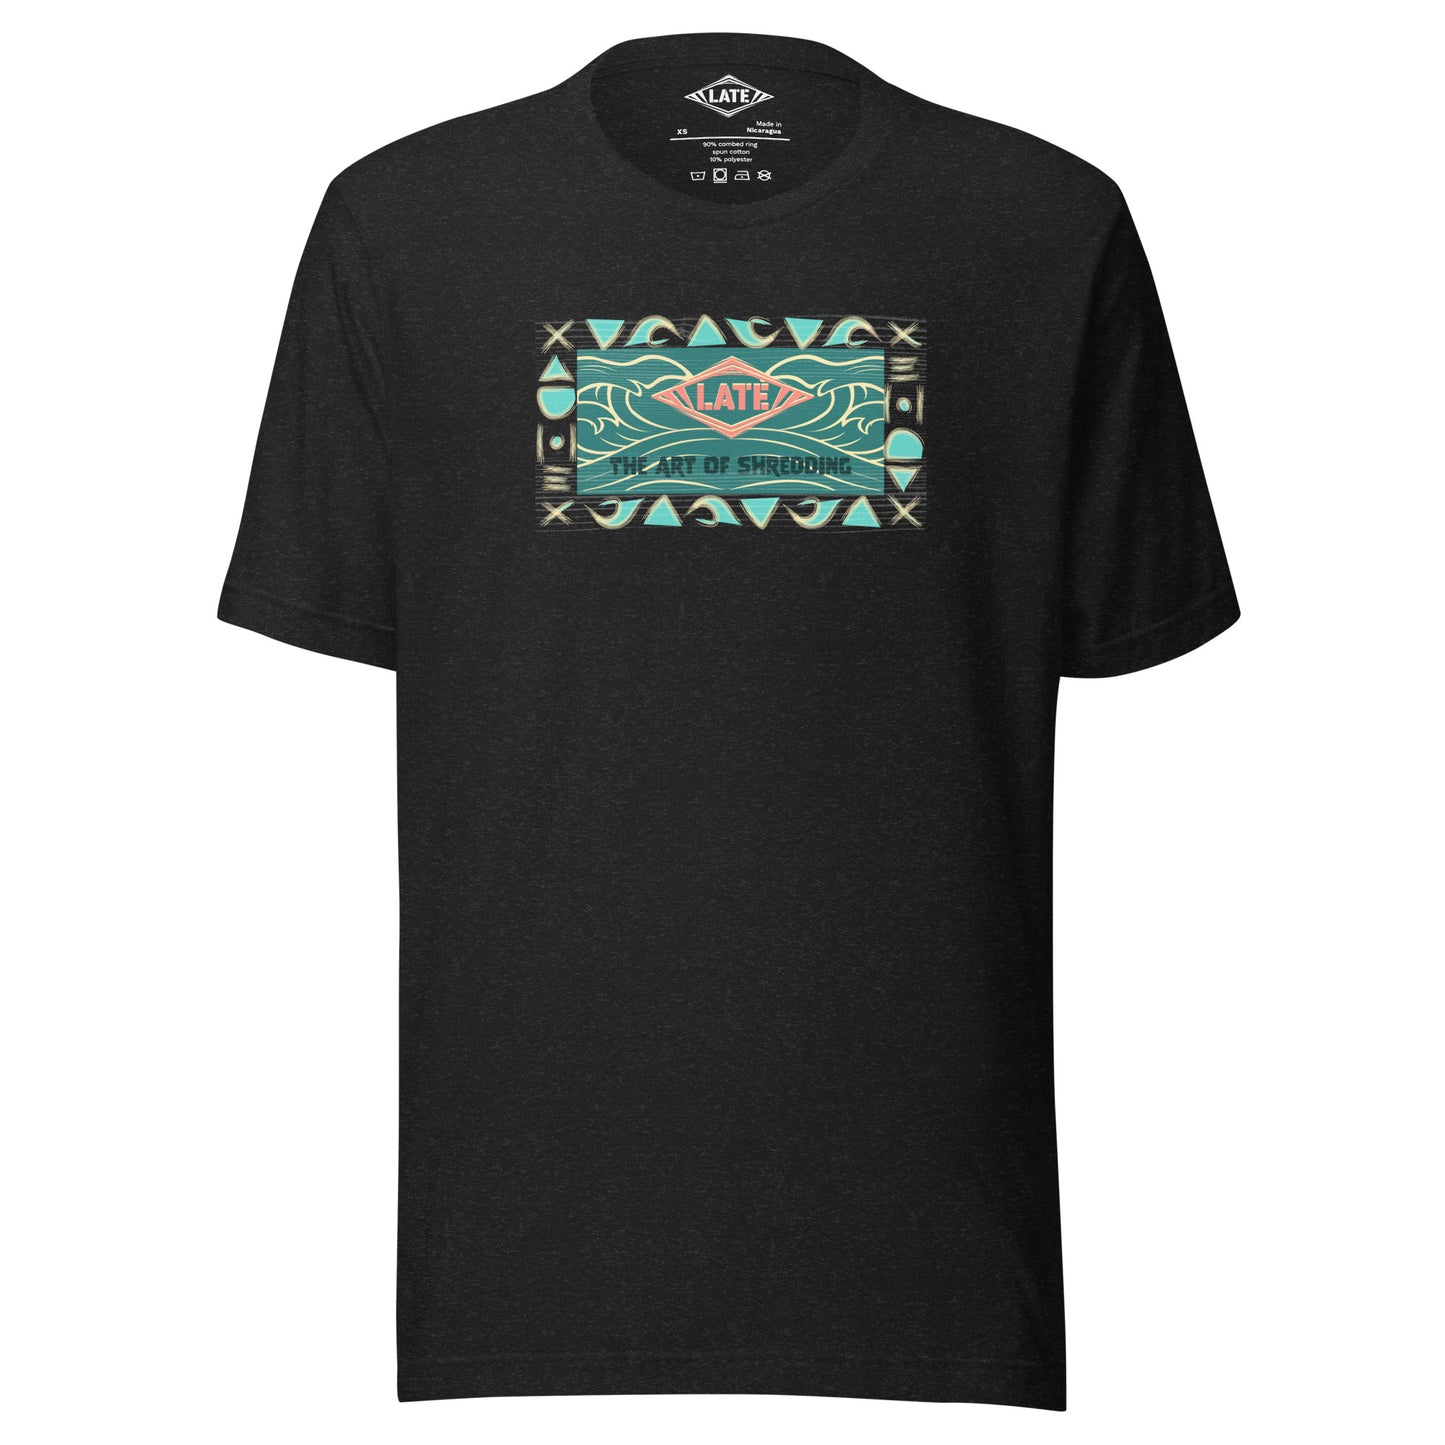 T-Shirt rétro surfwear art of shredding, logo Late surfshop motifs de vagues creuses, et dom-tom, t-shirt unisex noir gris